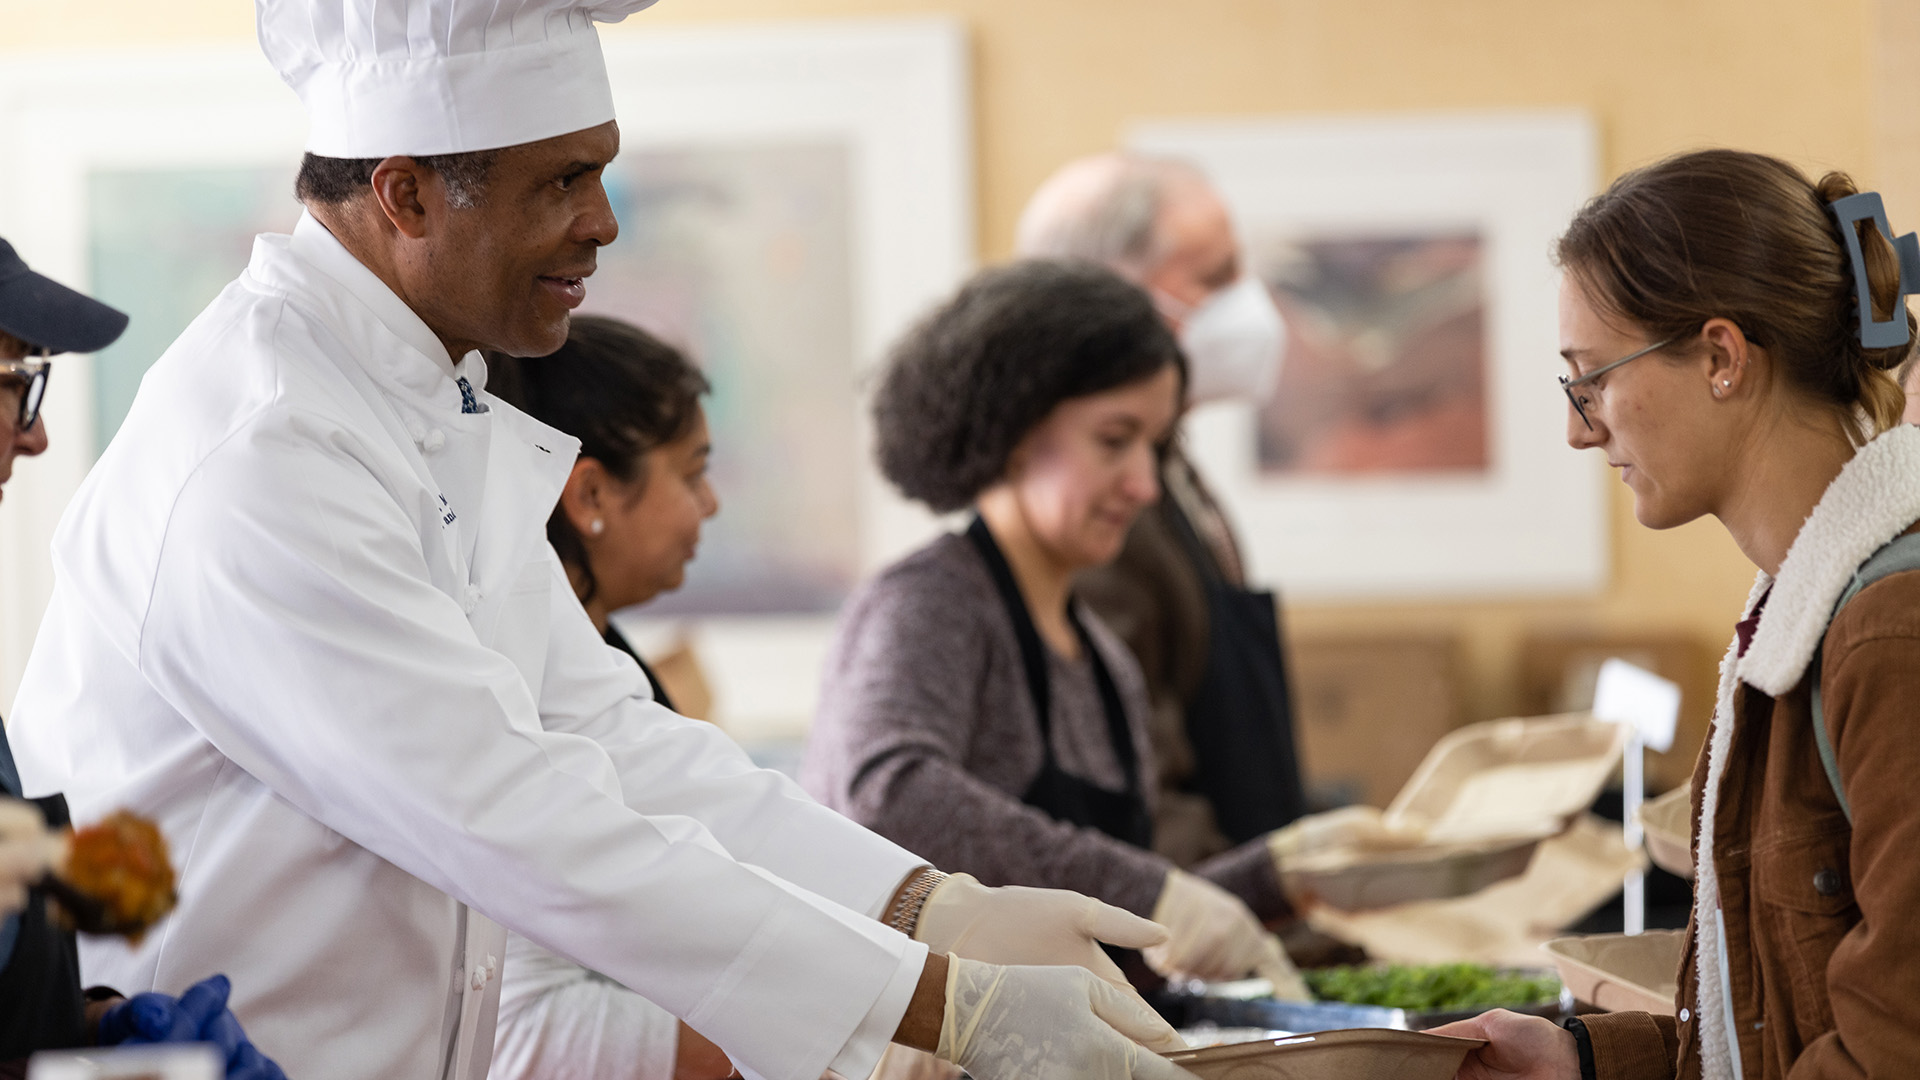 Dr. Philip Ozuah serves Thanksgiving meals to Montefiore Einstein associates